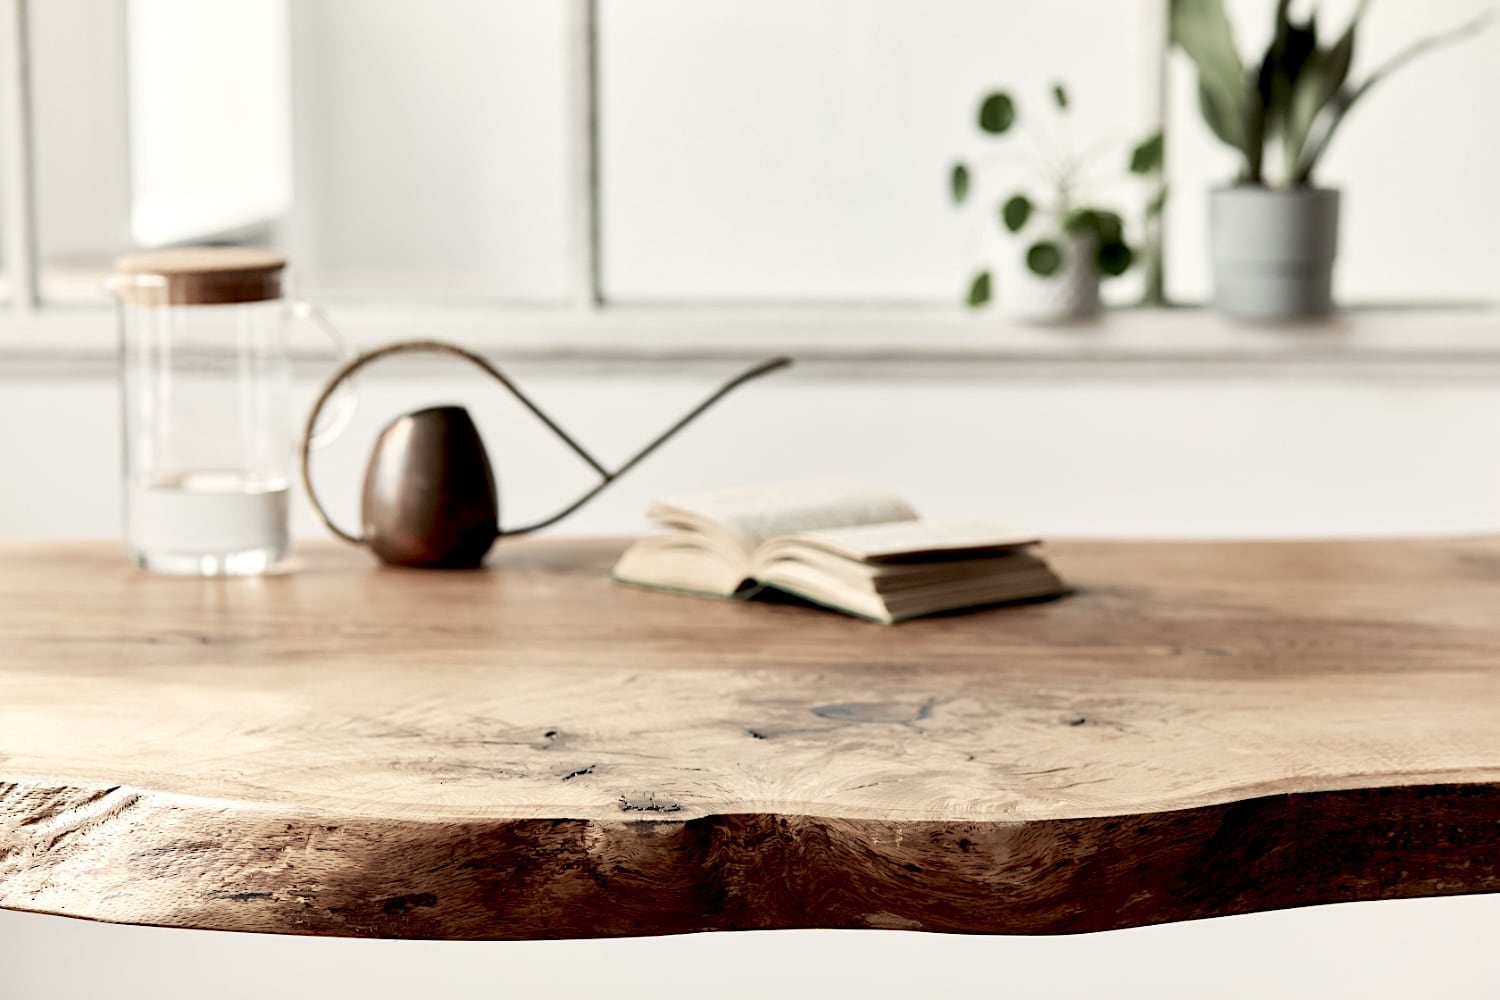 Une table live edge en bois avec un bord irregulier contient une carafe en verre, un arrosoir et un livre ouvert. Des plantes en pot sont visibles sur le rebord de la fenêtre en arrière-plan.